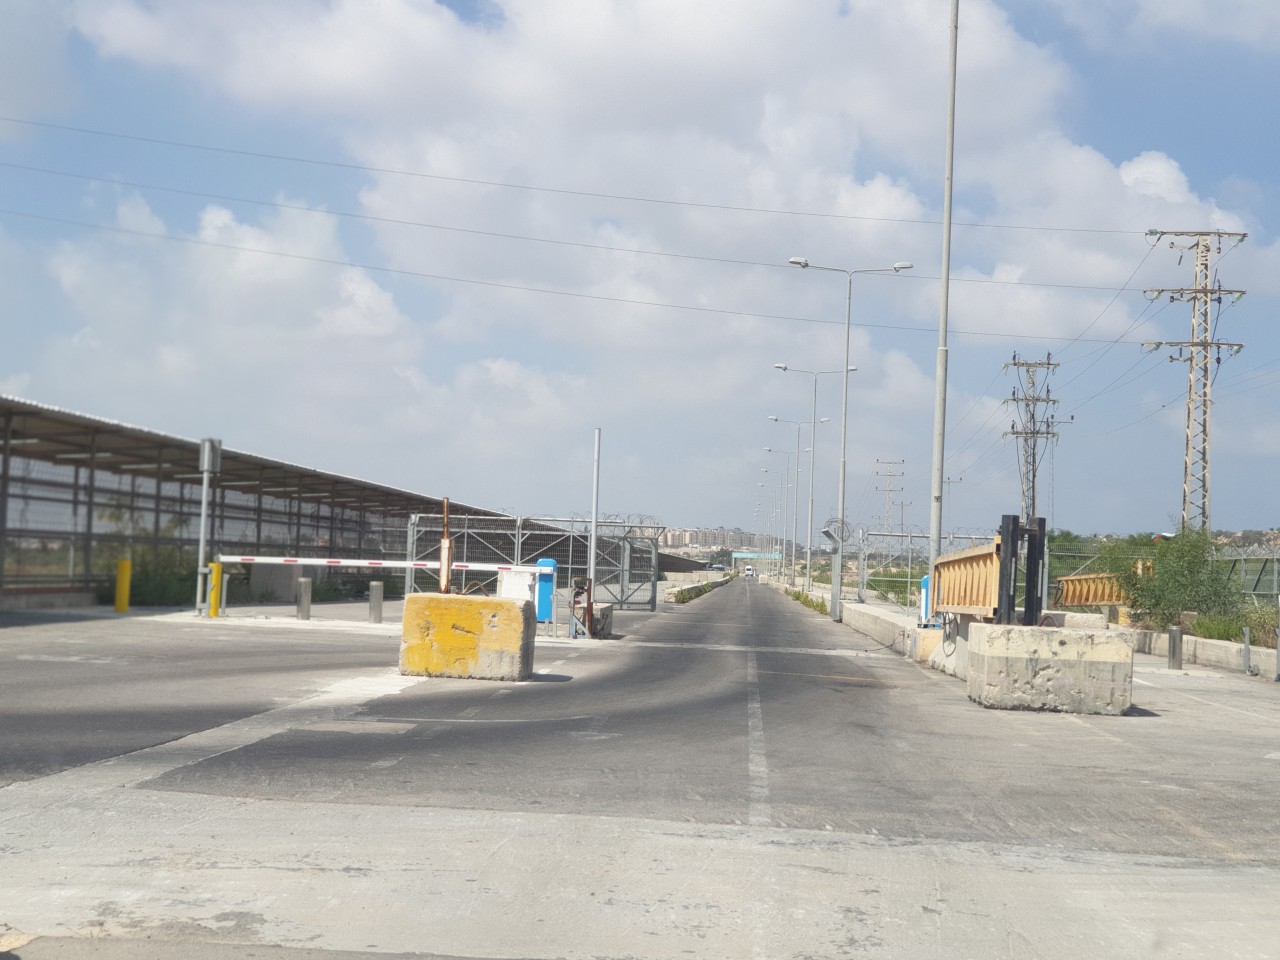 כביש ומסלול להולכי הרגל המובילים למסוף במעבר ארז, אוגוסט 2019.